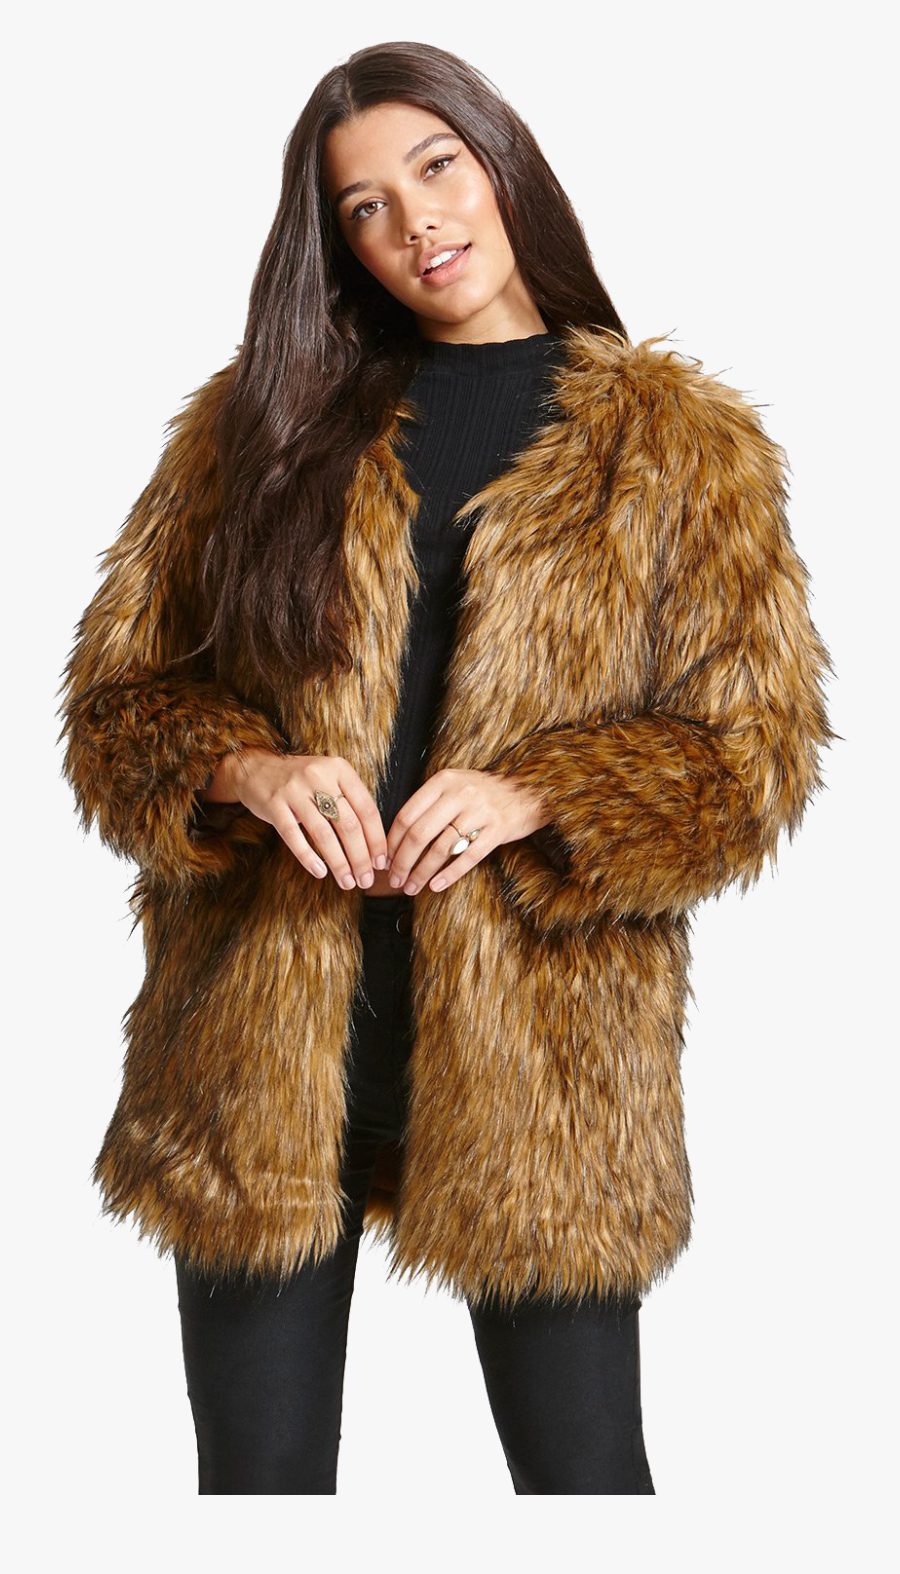 Faux Fur Coat Png Image - Brown Faux Fur Coat For Women, Transparent Clipart